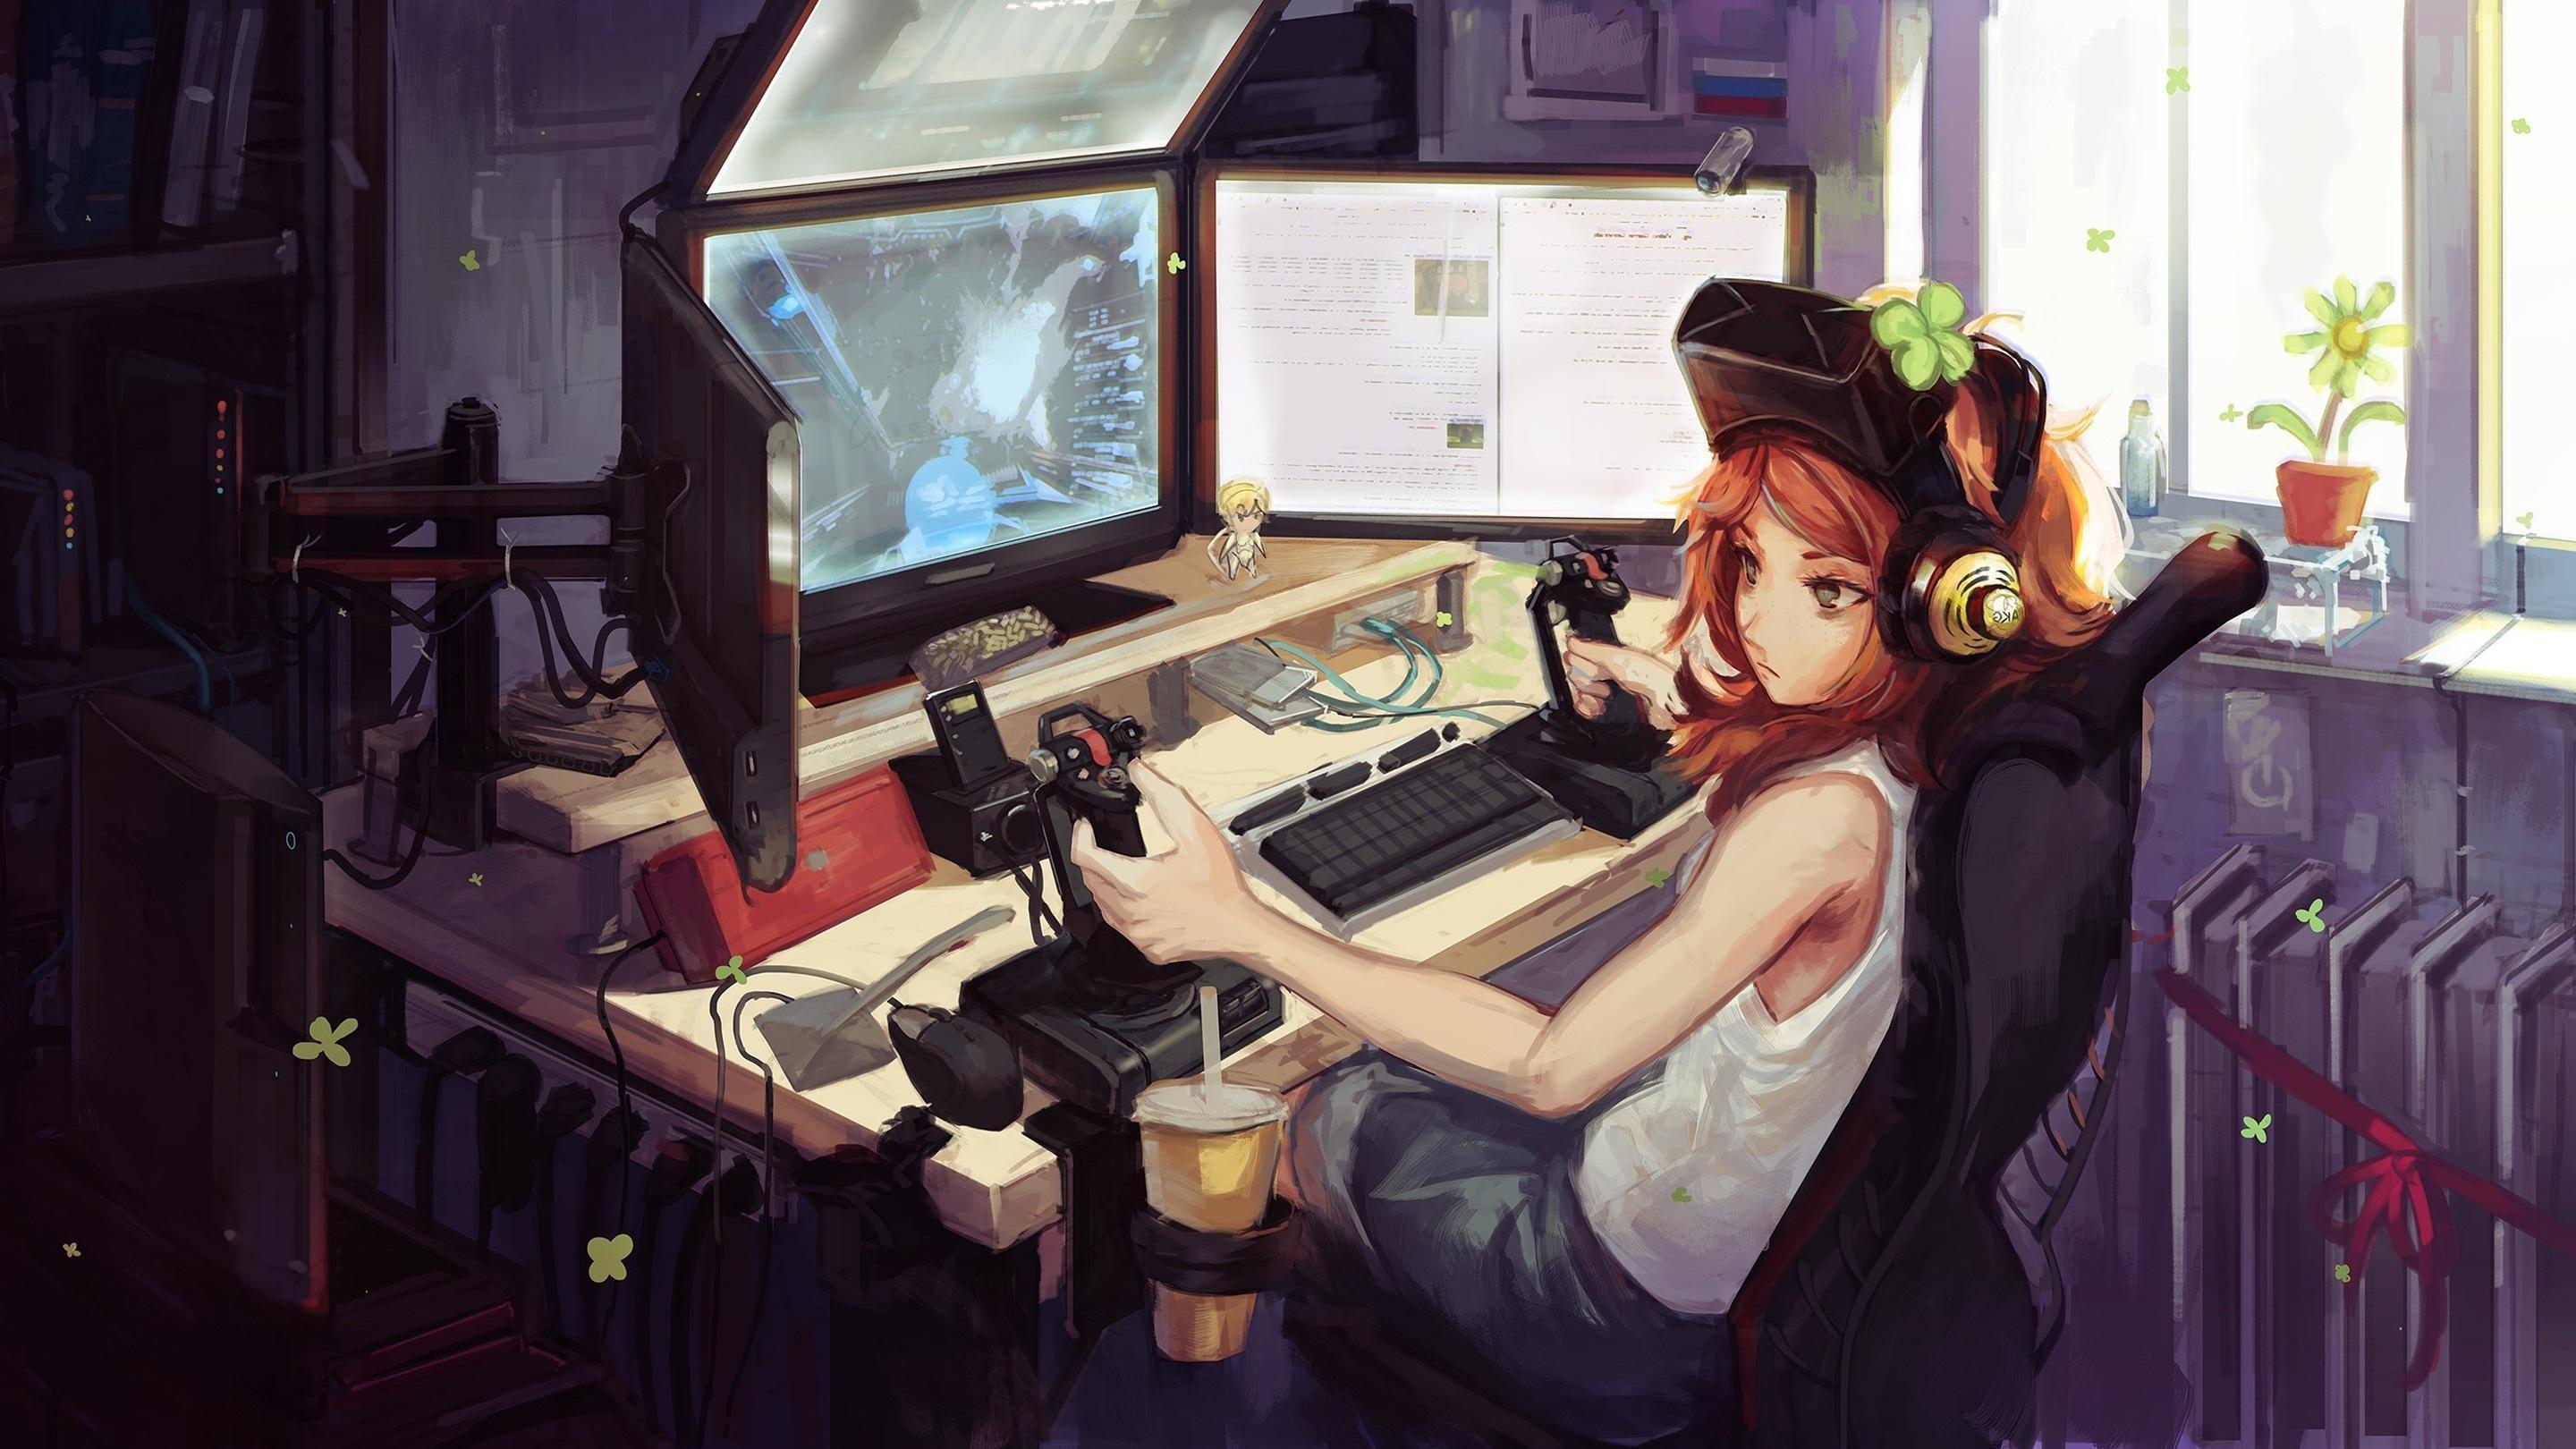 Premium Photo | Gaming desktop pc computer setup gamer illustration